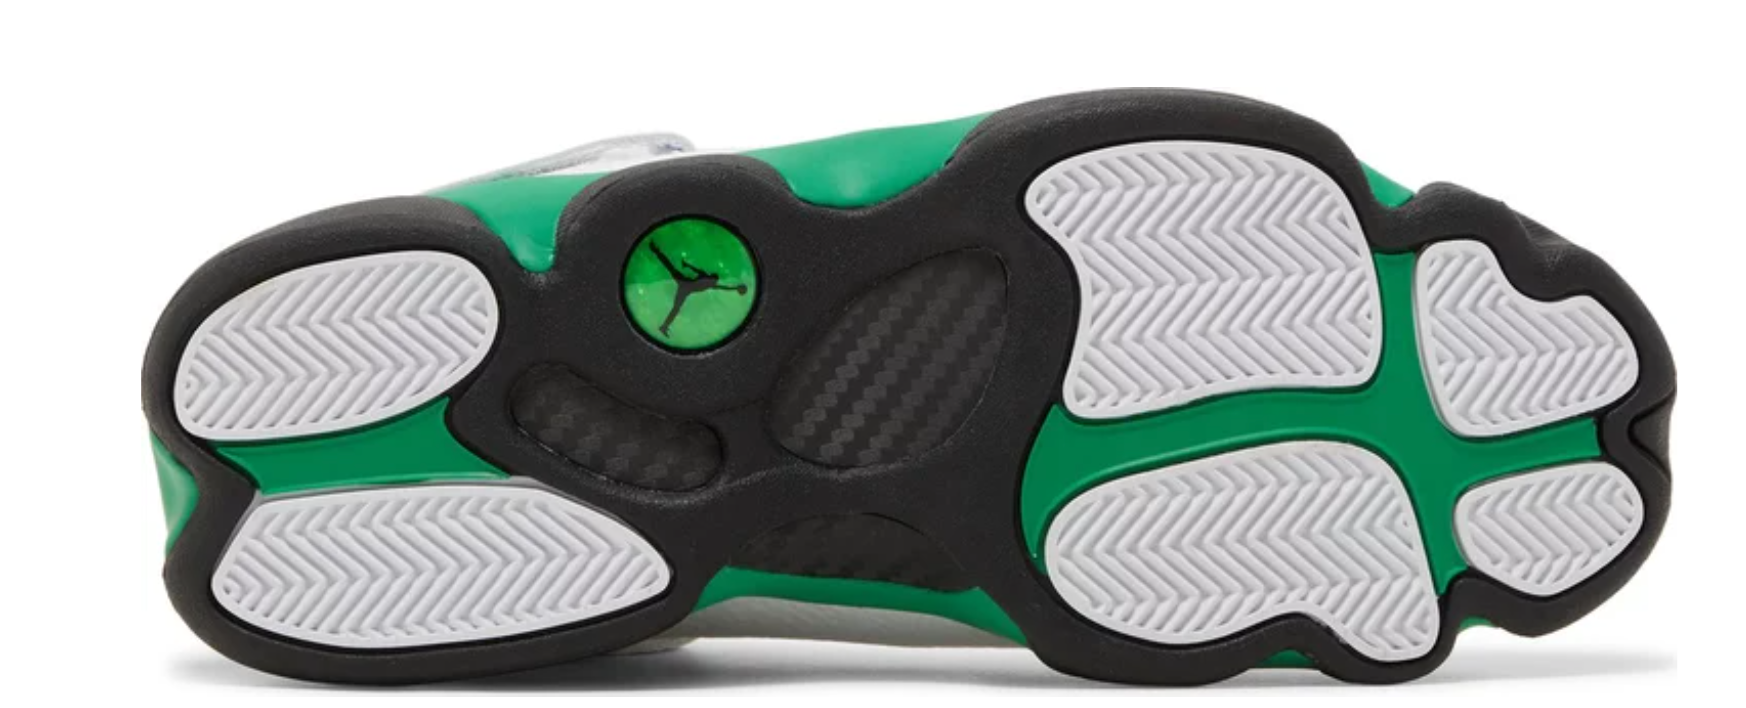 Nike Mens Jordan 6 Rings Basketball Shoes